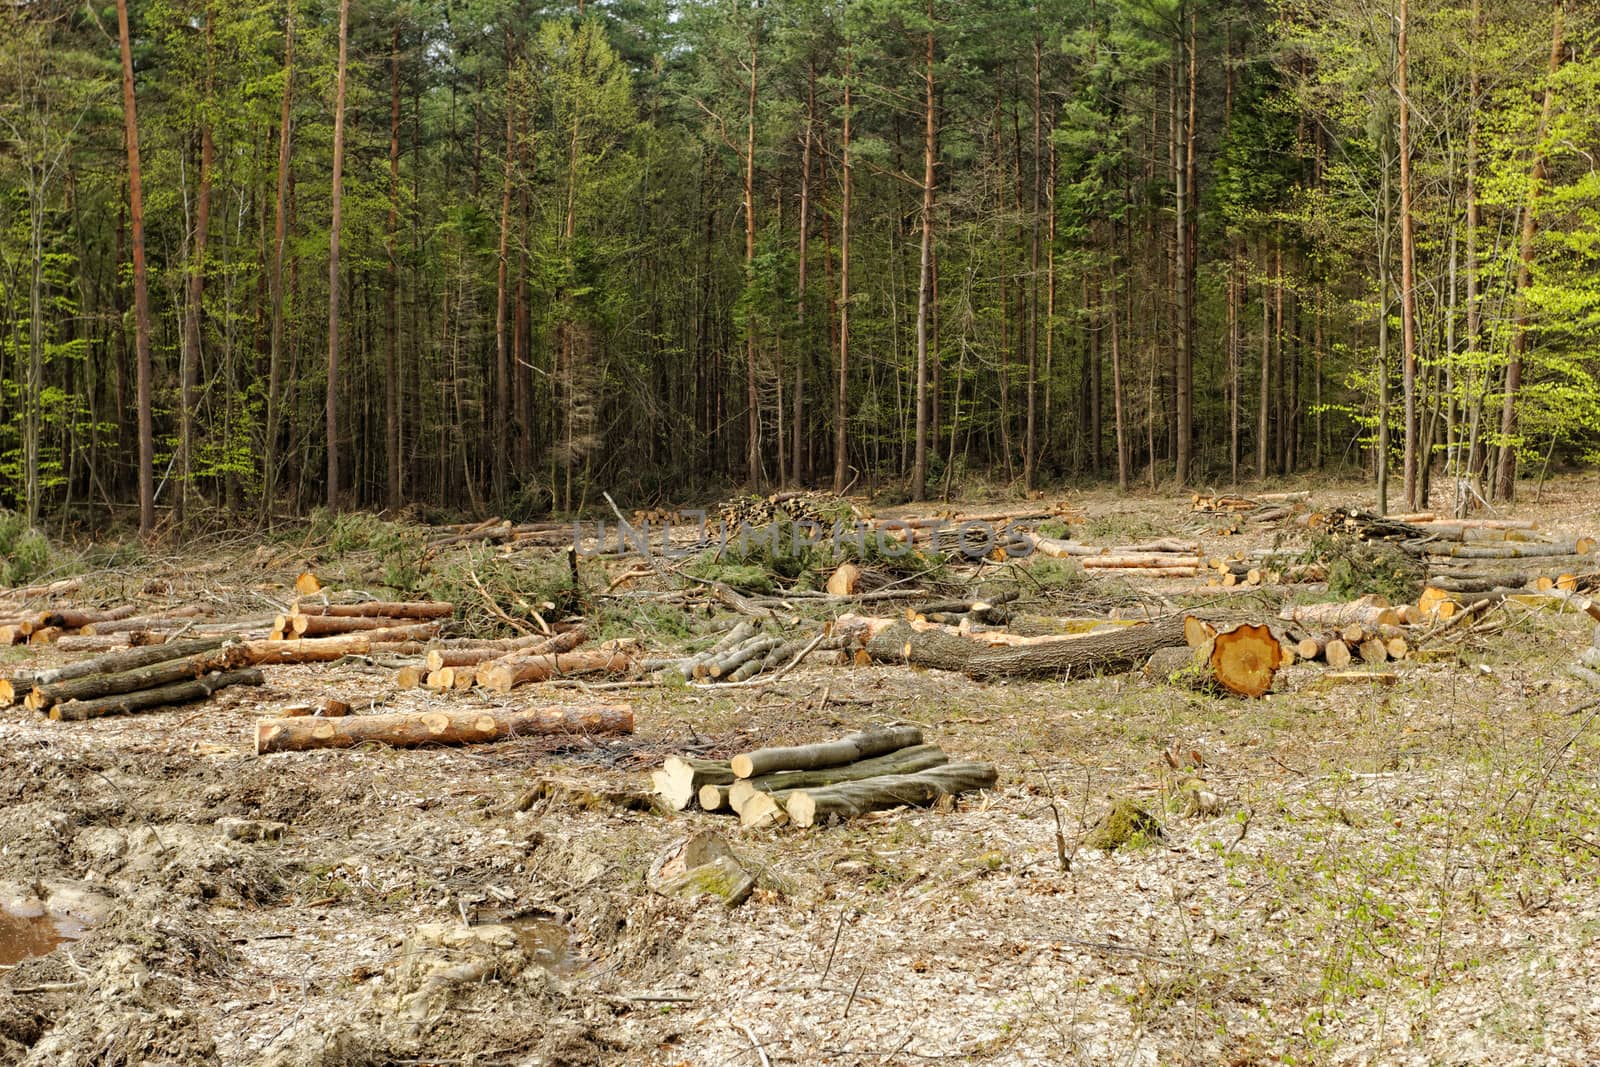 industrial deforestation and logging